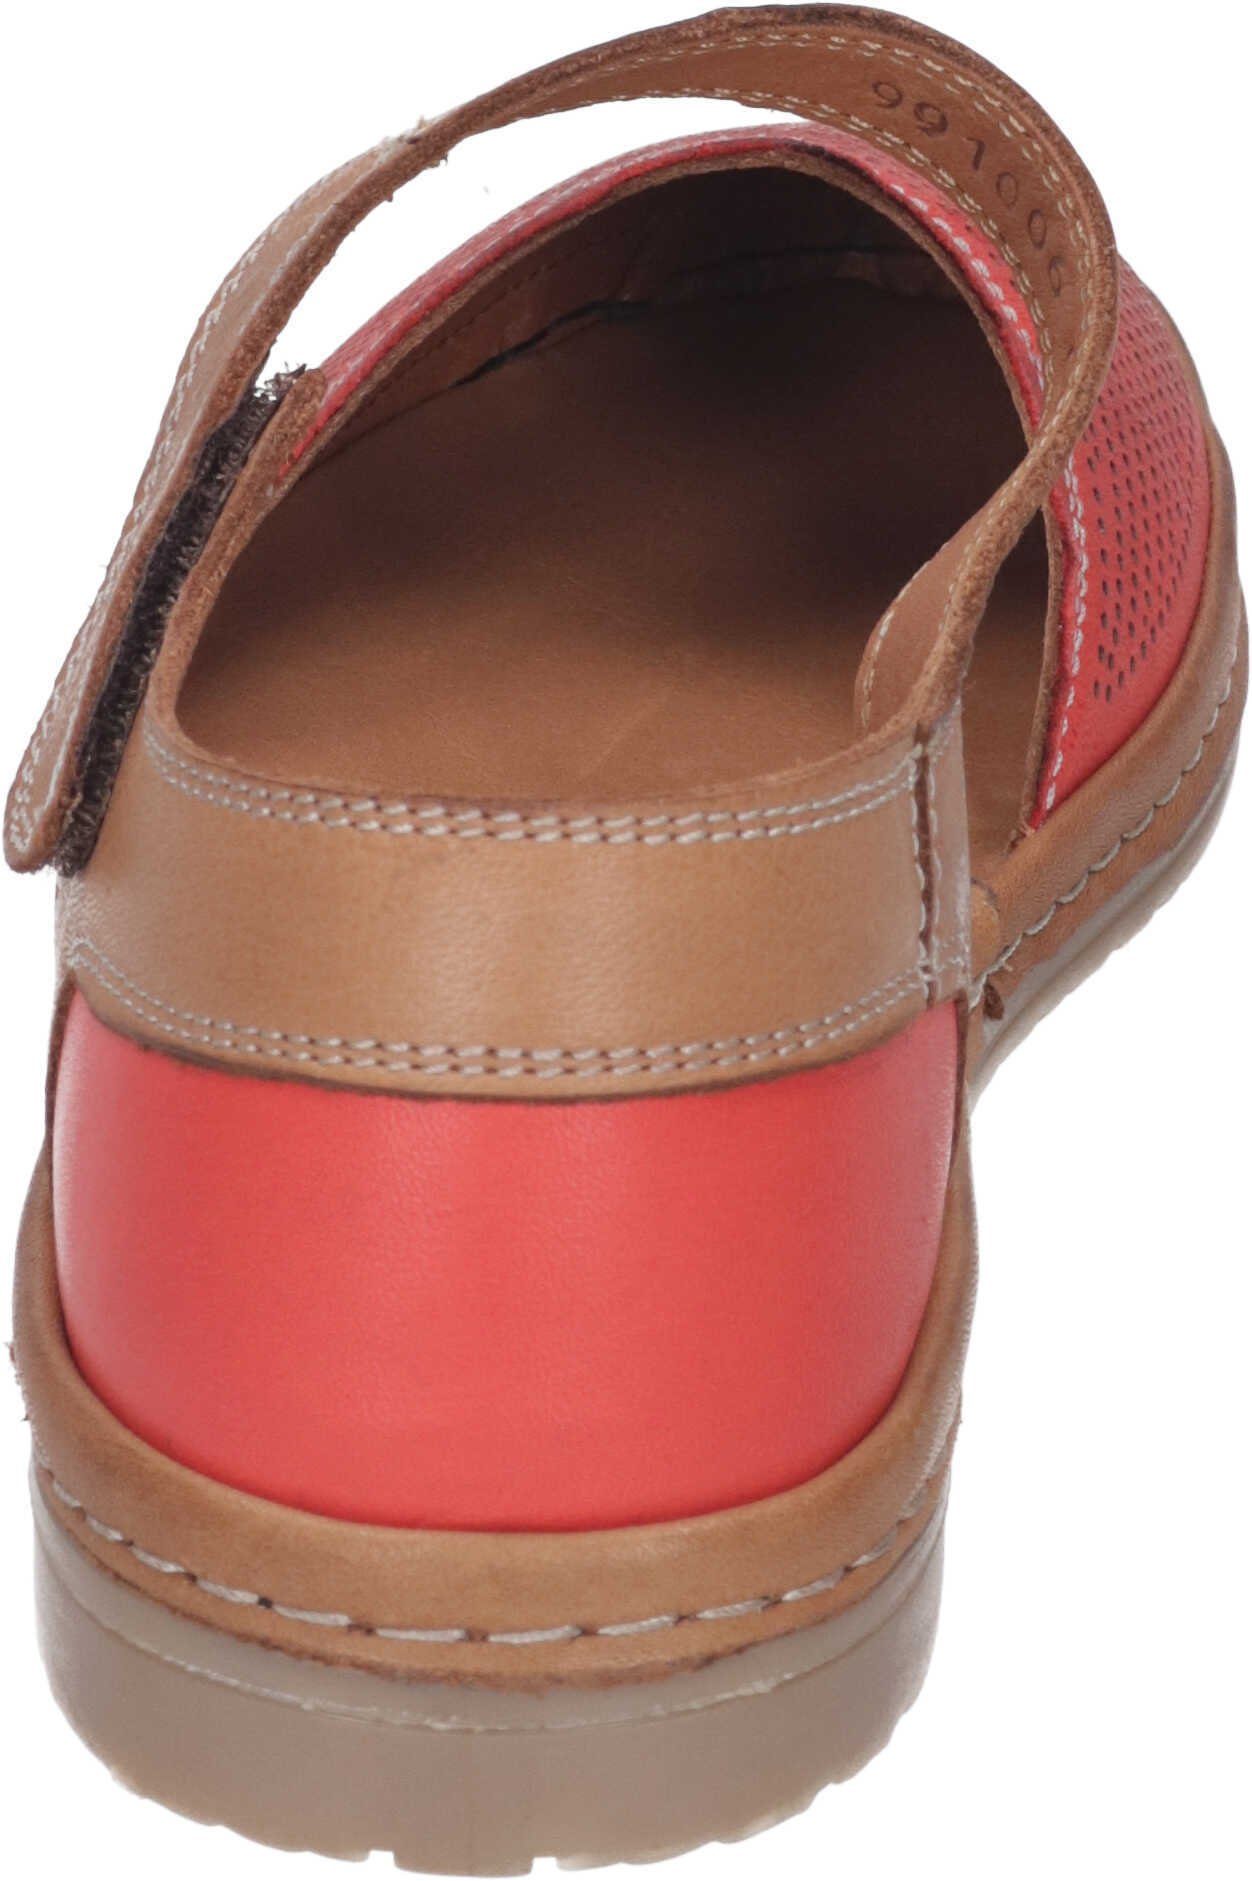 Manitu aus Leder Sandalette echtem Sandalen rot